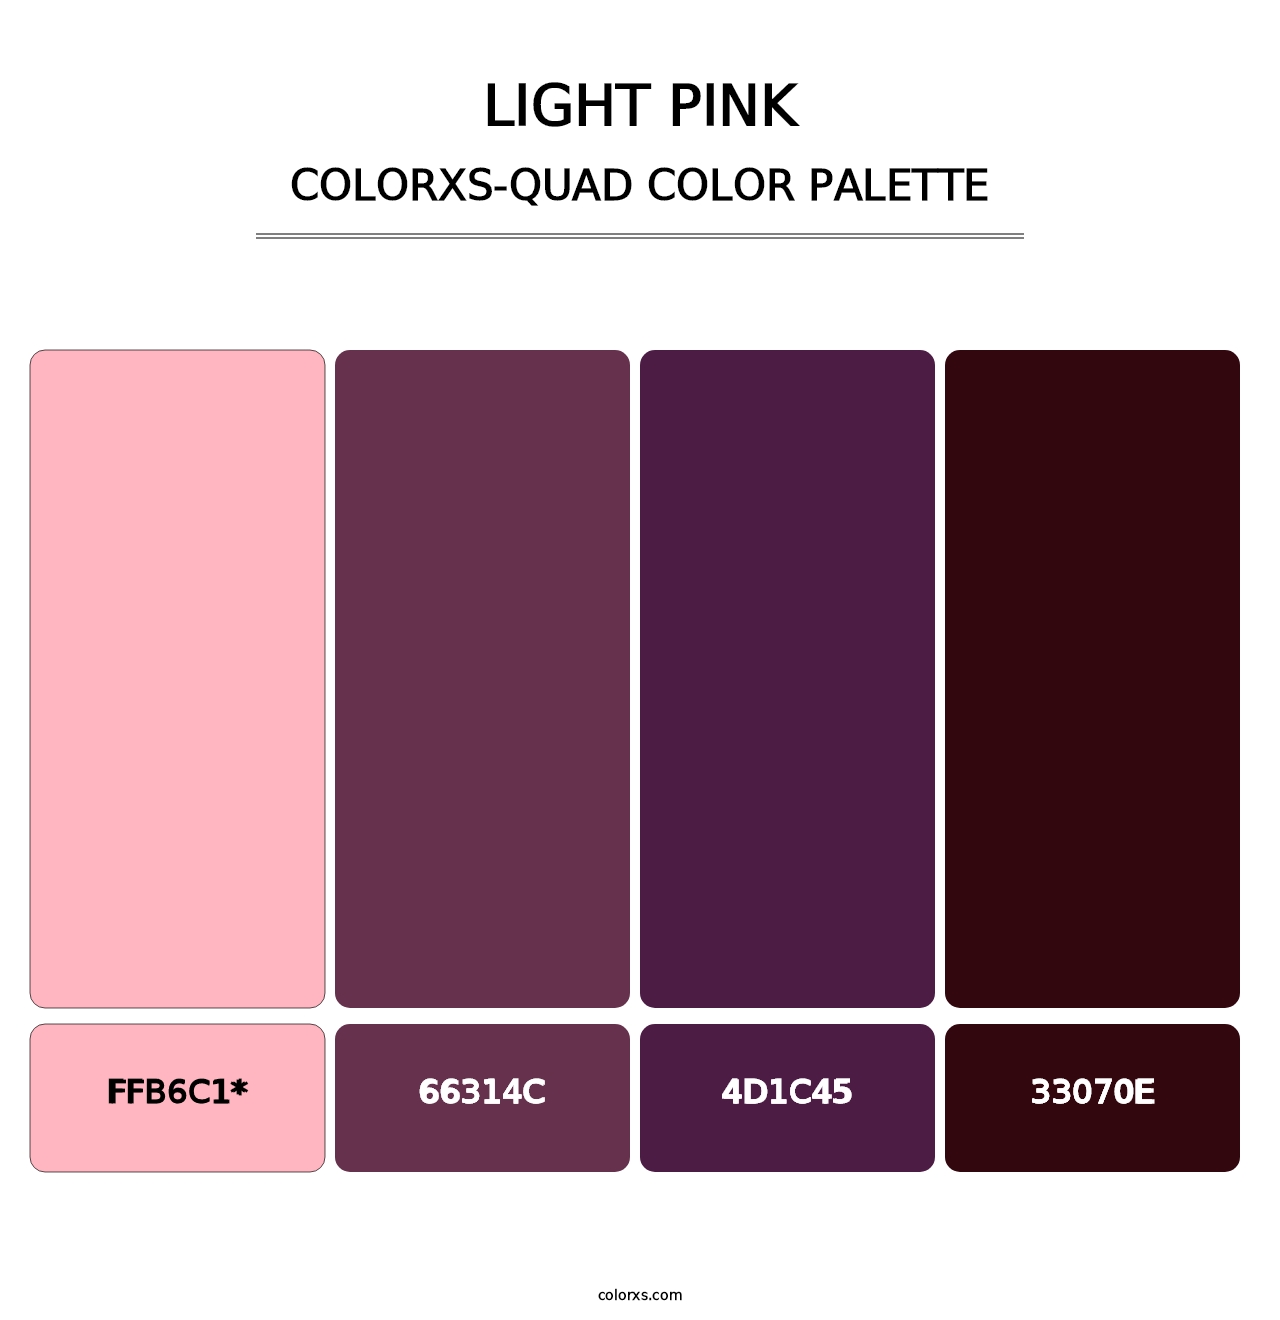 Light Pink - Colorxs Quad Palette